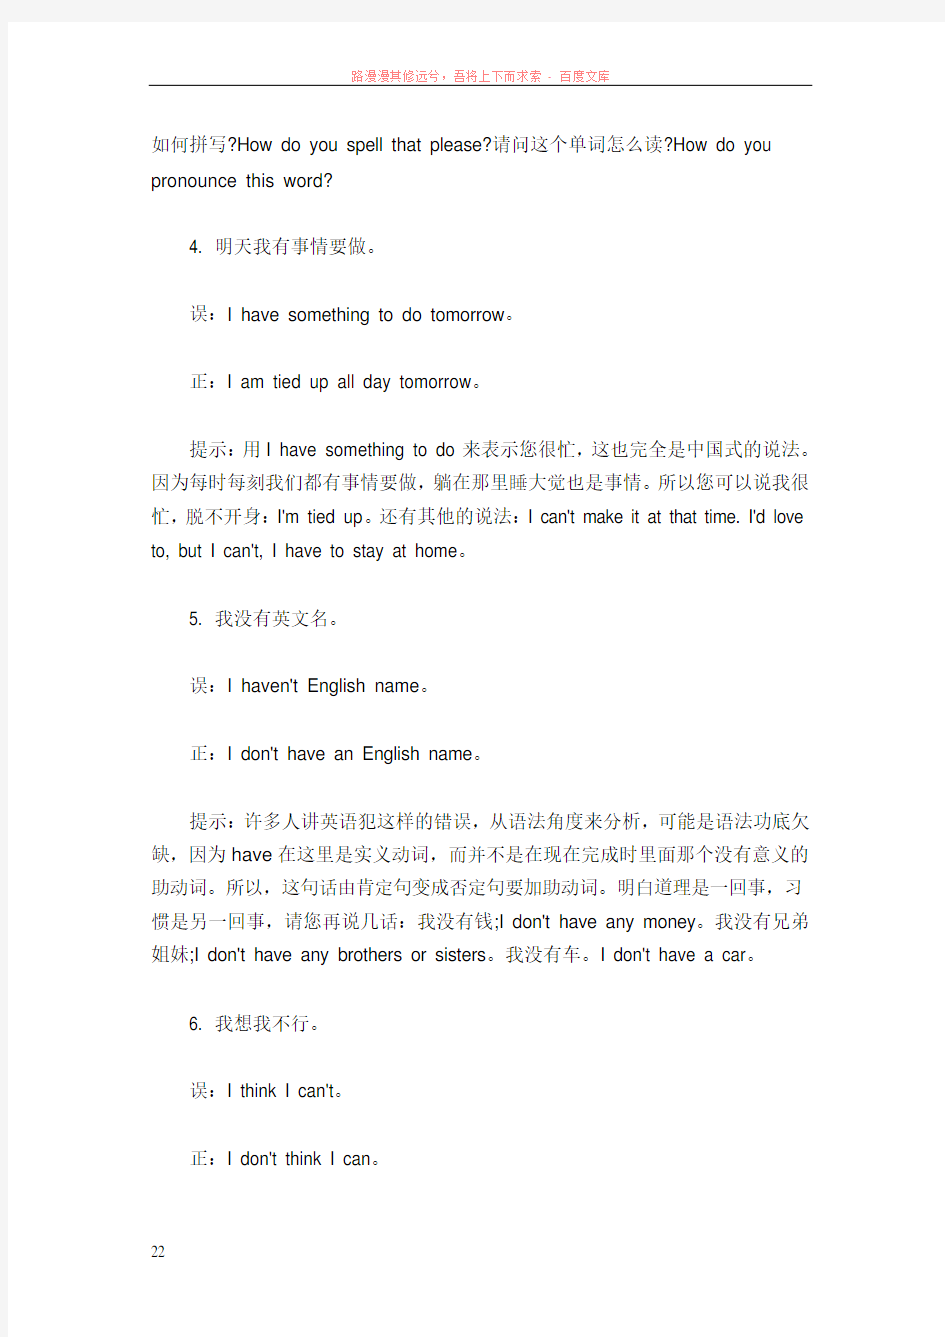 英语口语交际中常犯的中国式错误